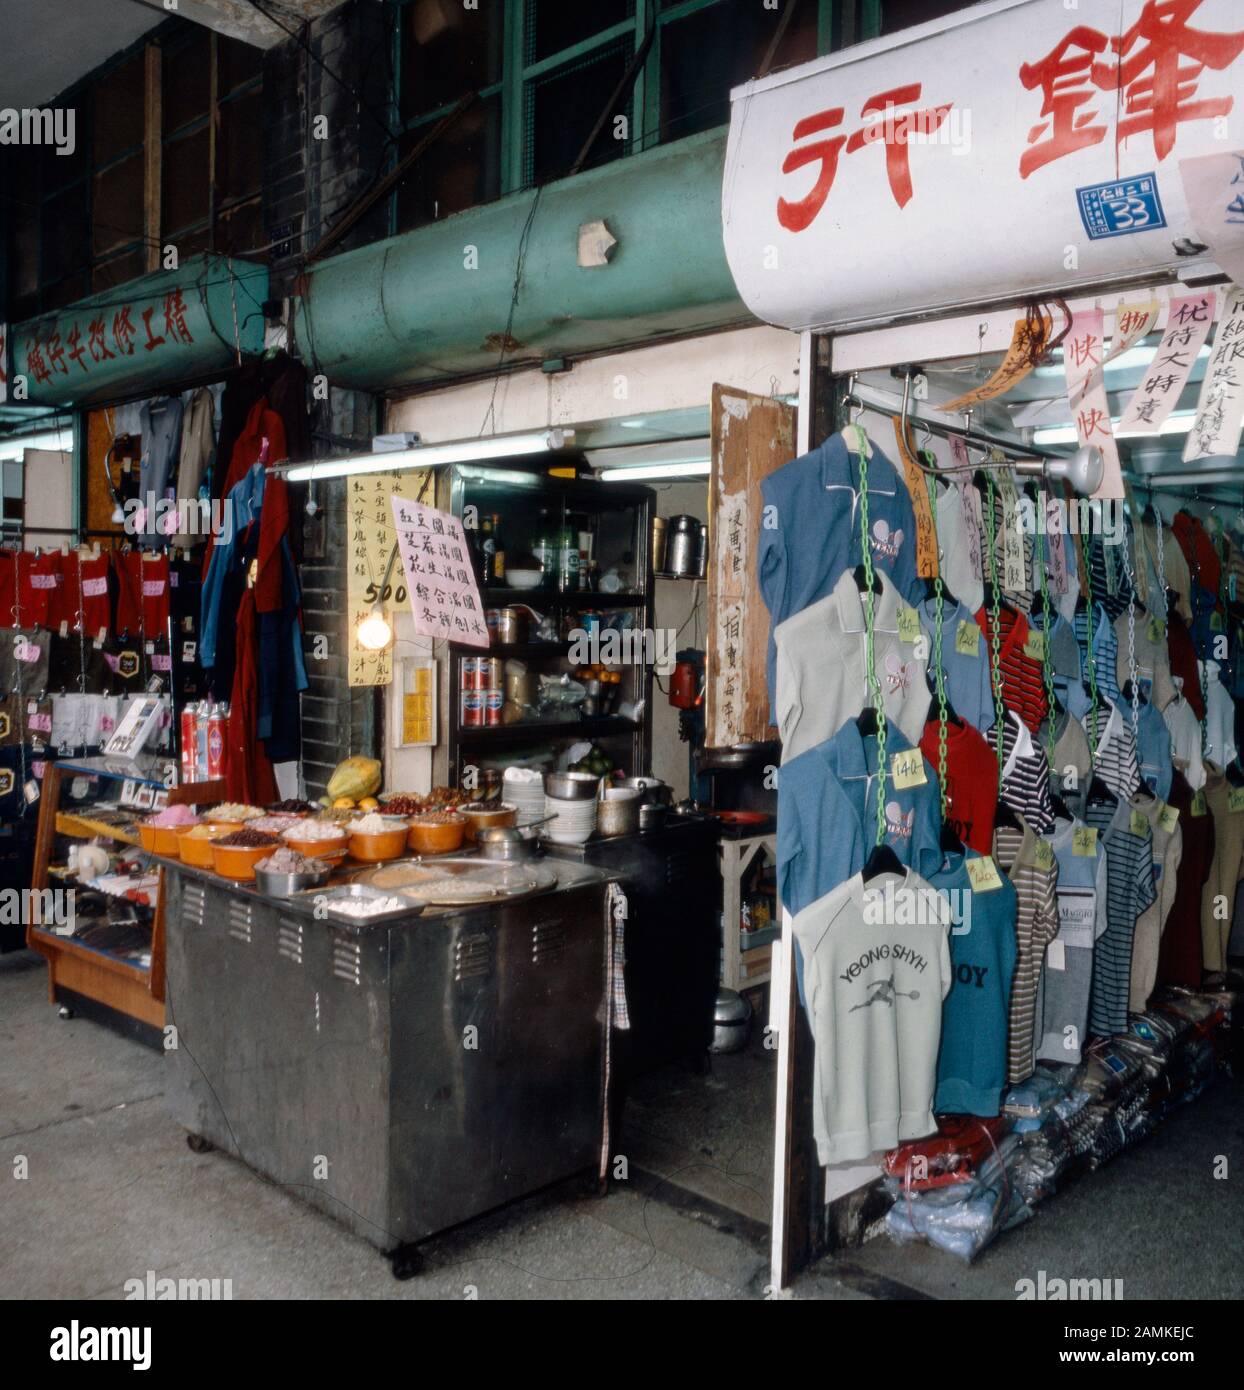 Garküche in den Straßen von Taiwan, 1980er Jahre. Cookshop in the streets of Taiwan, 1980s. Stock Photo